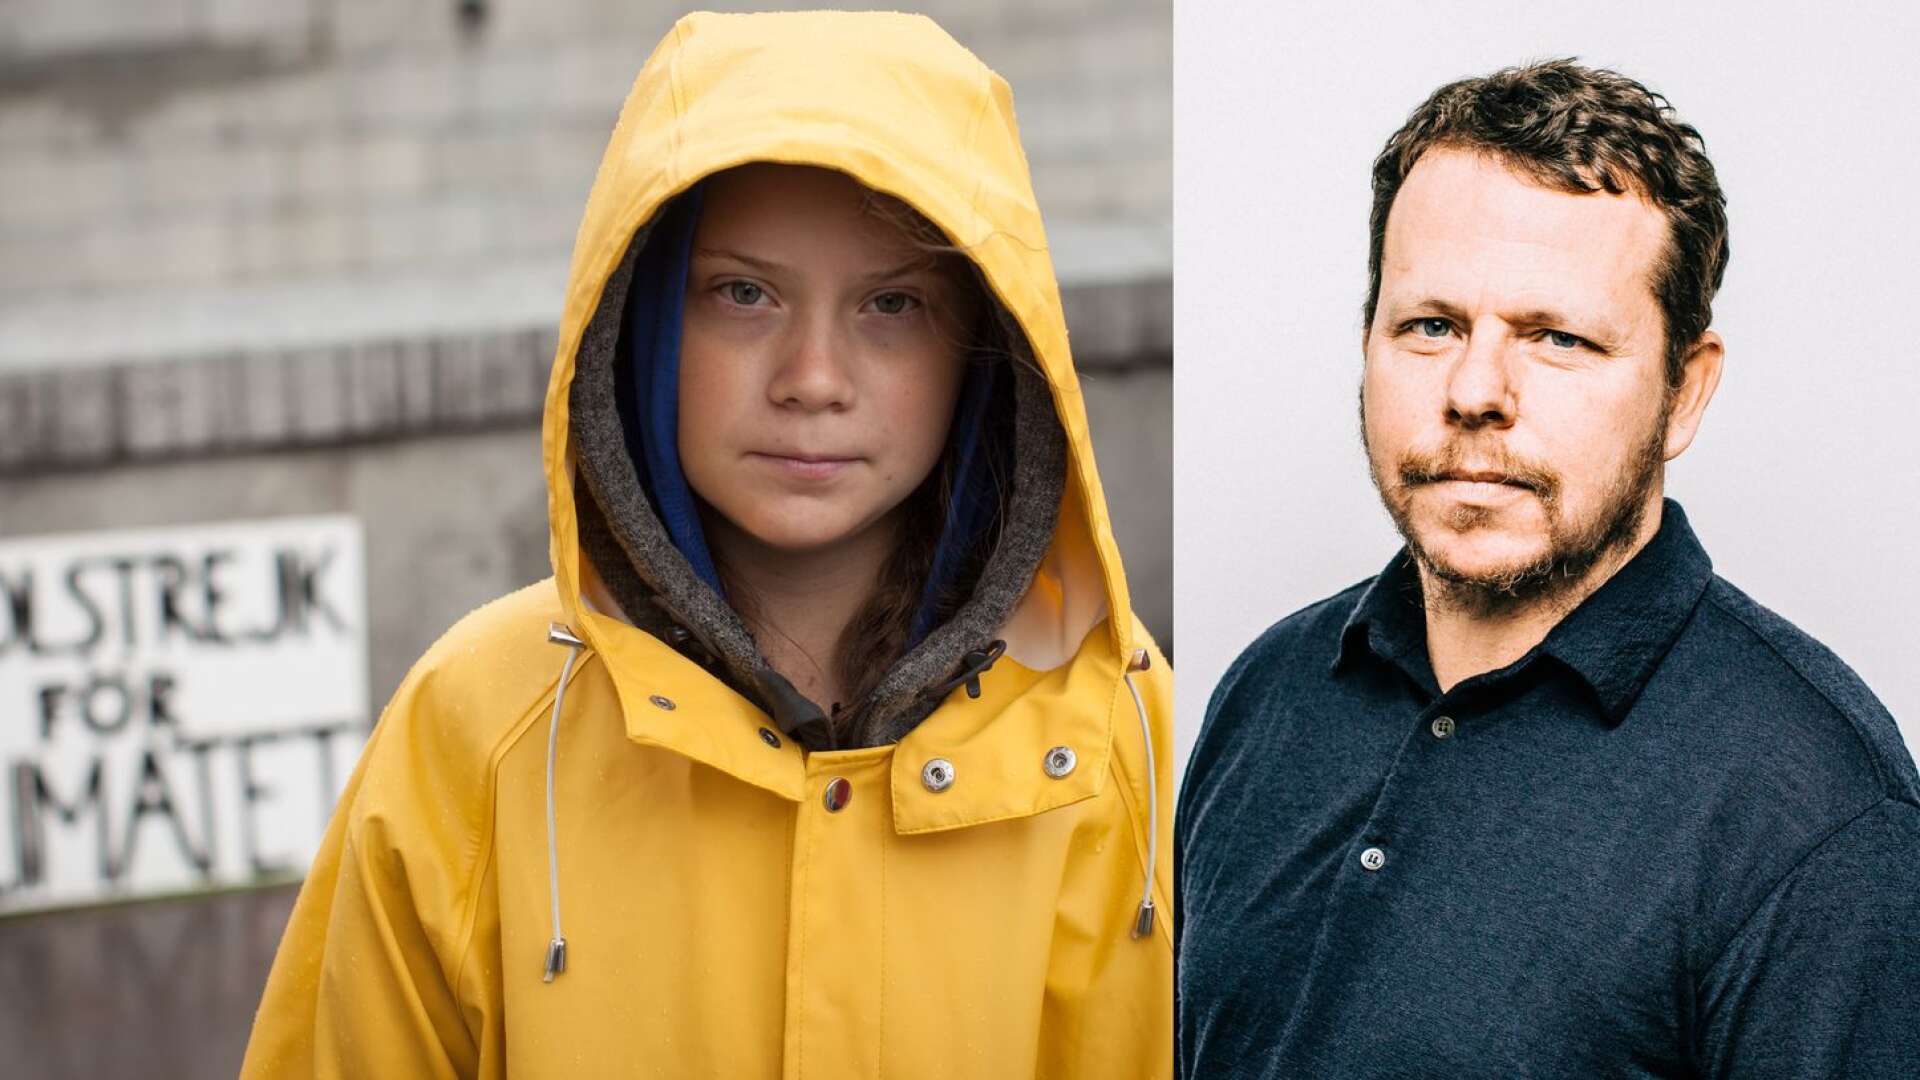 Filmen Greta är nominerad till tre Guldbaggar - för bästa regi, film, och dokumentär. Bakom dokumentärfilmen står den värmländske filmproducenten Fredrik Heinig.